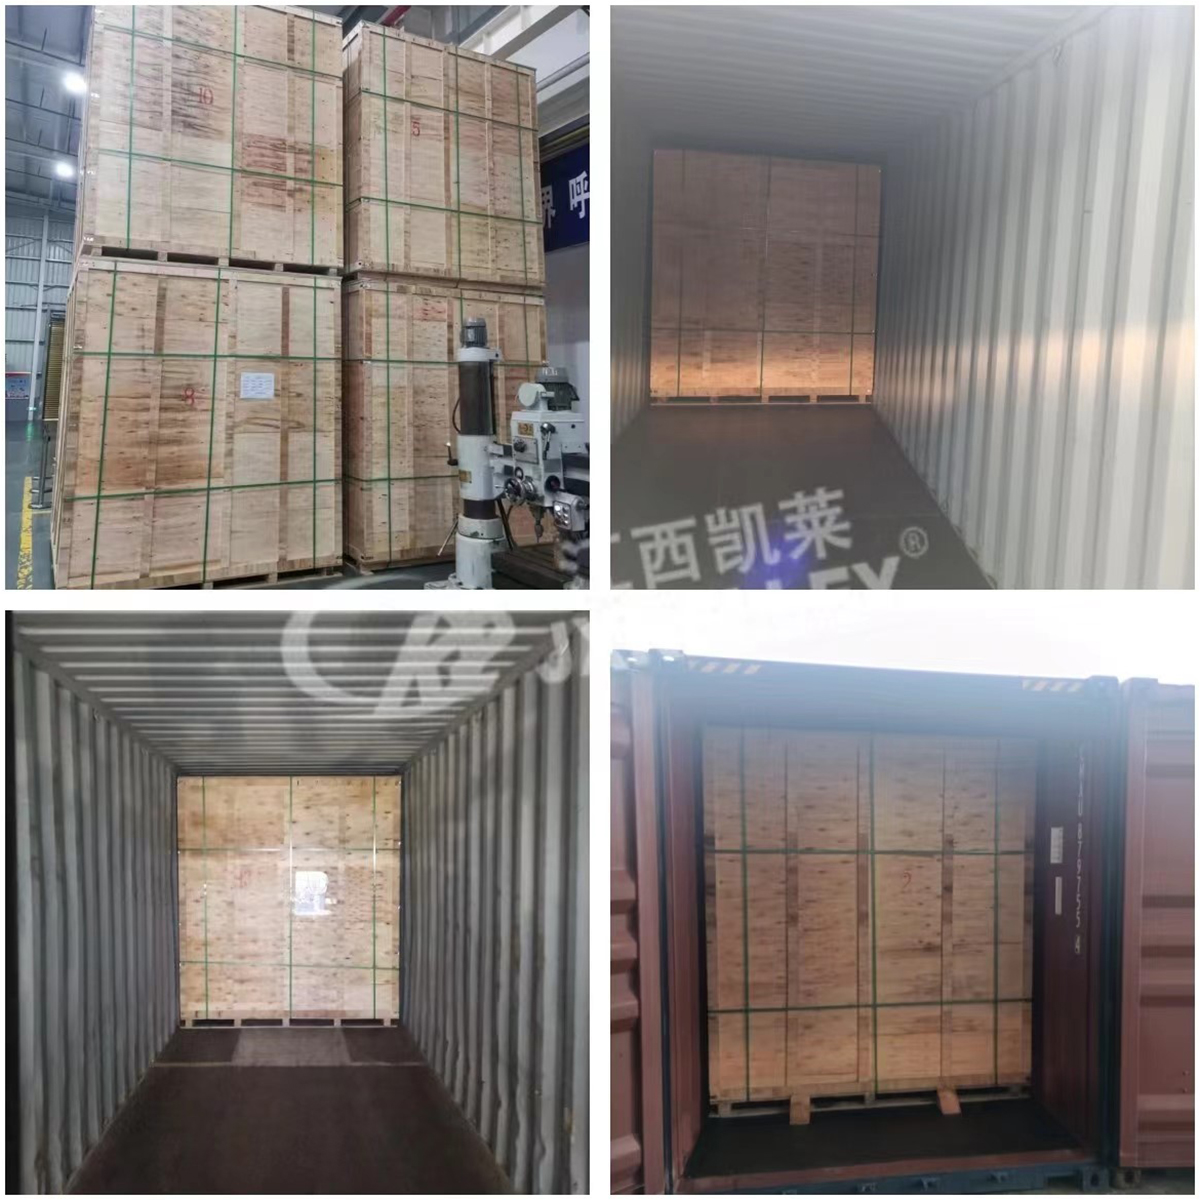 2023-07 Mellapak Stturctured Packing Supply Ki Kamupene Whakapaipai Rongonui a Malaysia